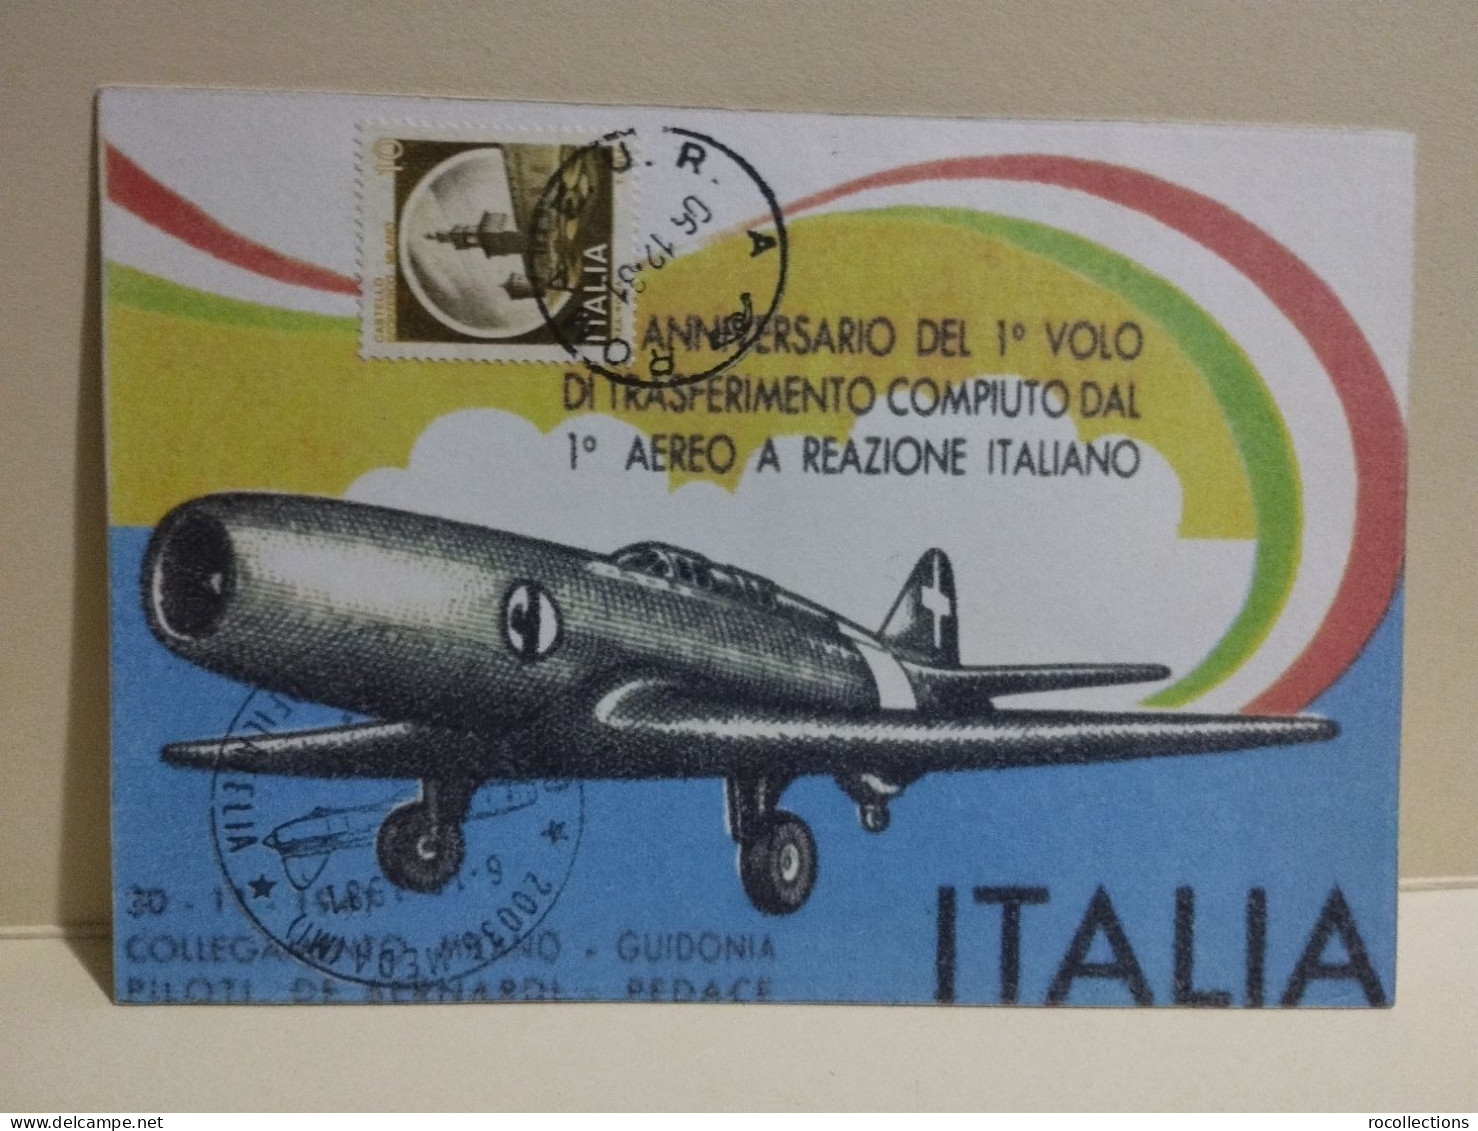 Italia 4x postcards 75° Aeronautica Militare, I° Volo aereo a reazione italiano.